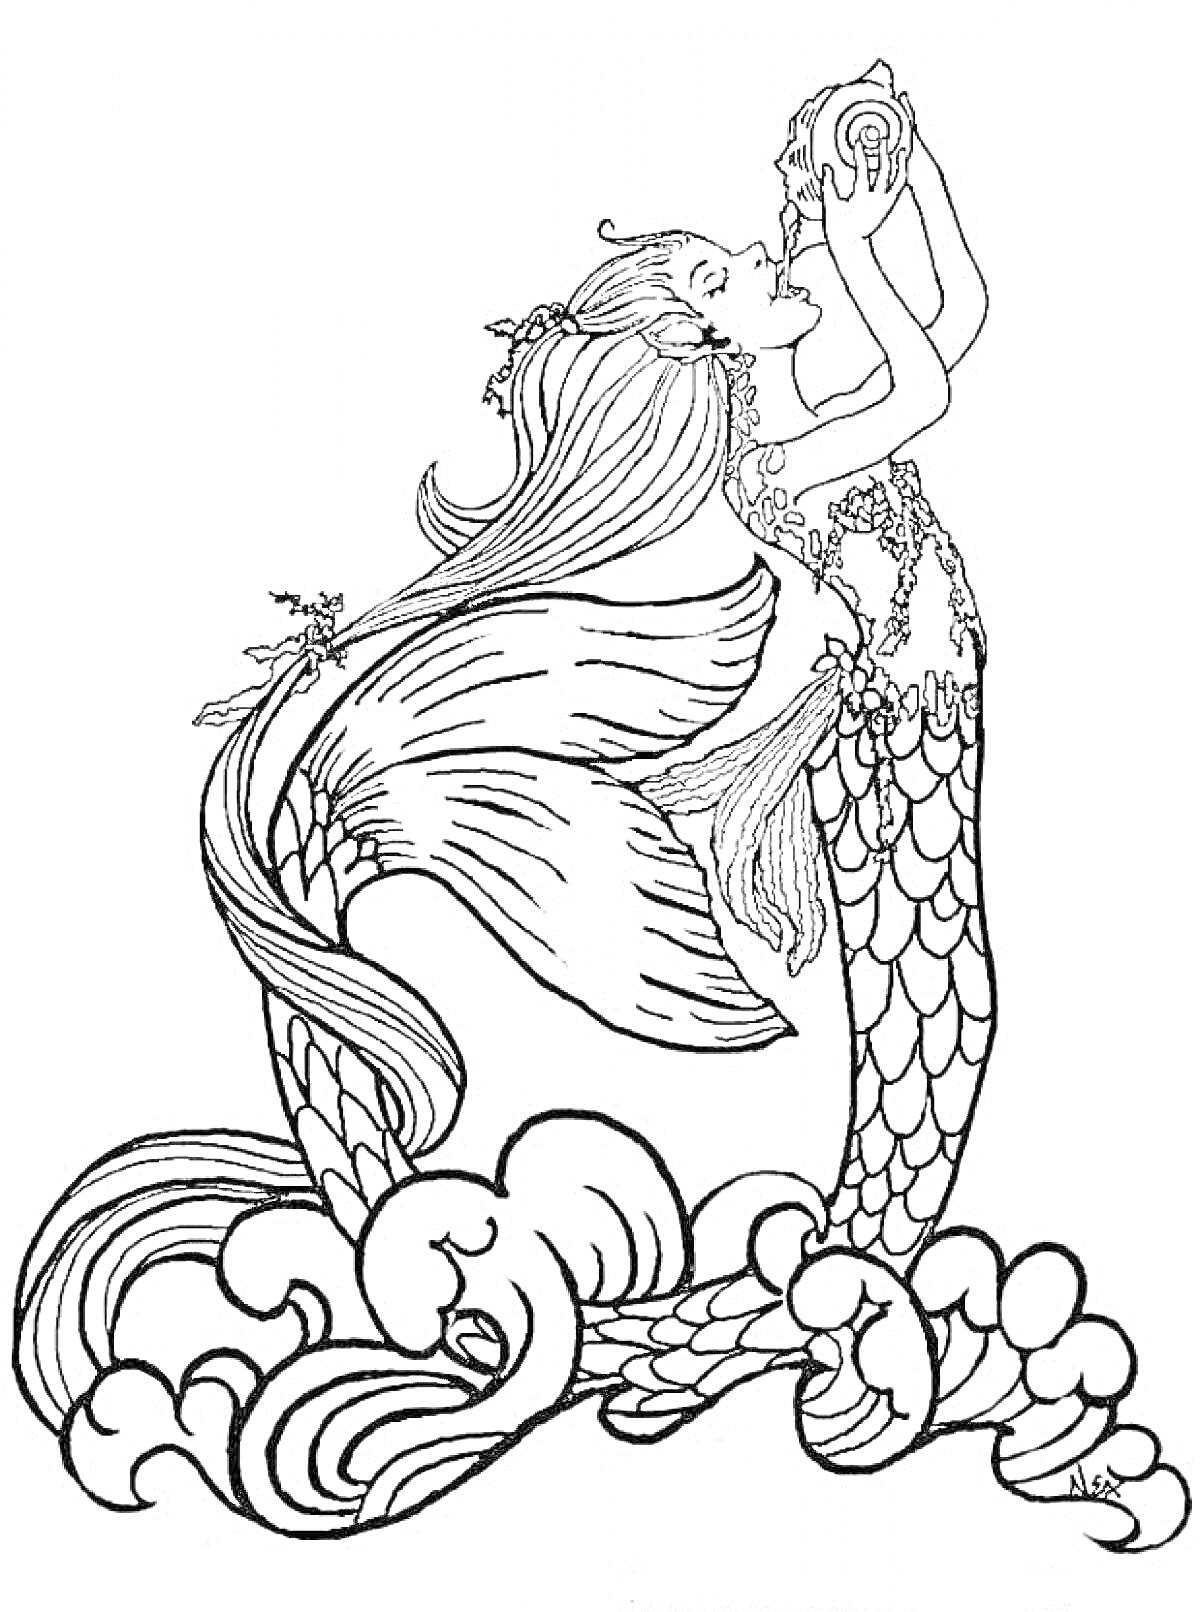 Раскраска Русалка с длинными волосами, раковиной в руках и хвостом, стоящая на волнах